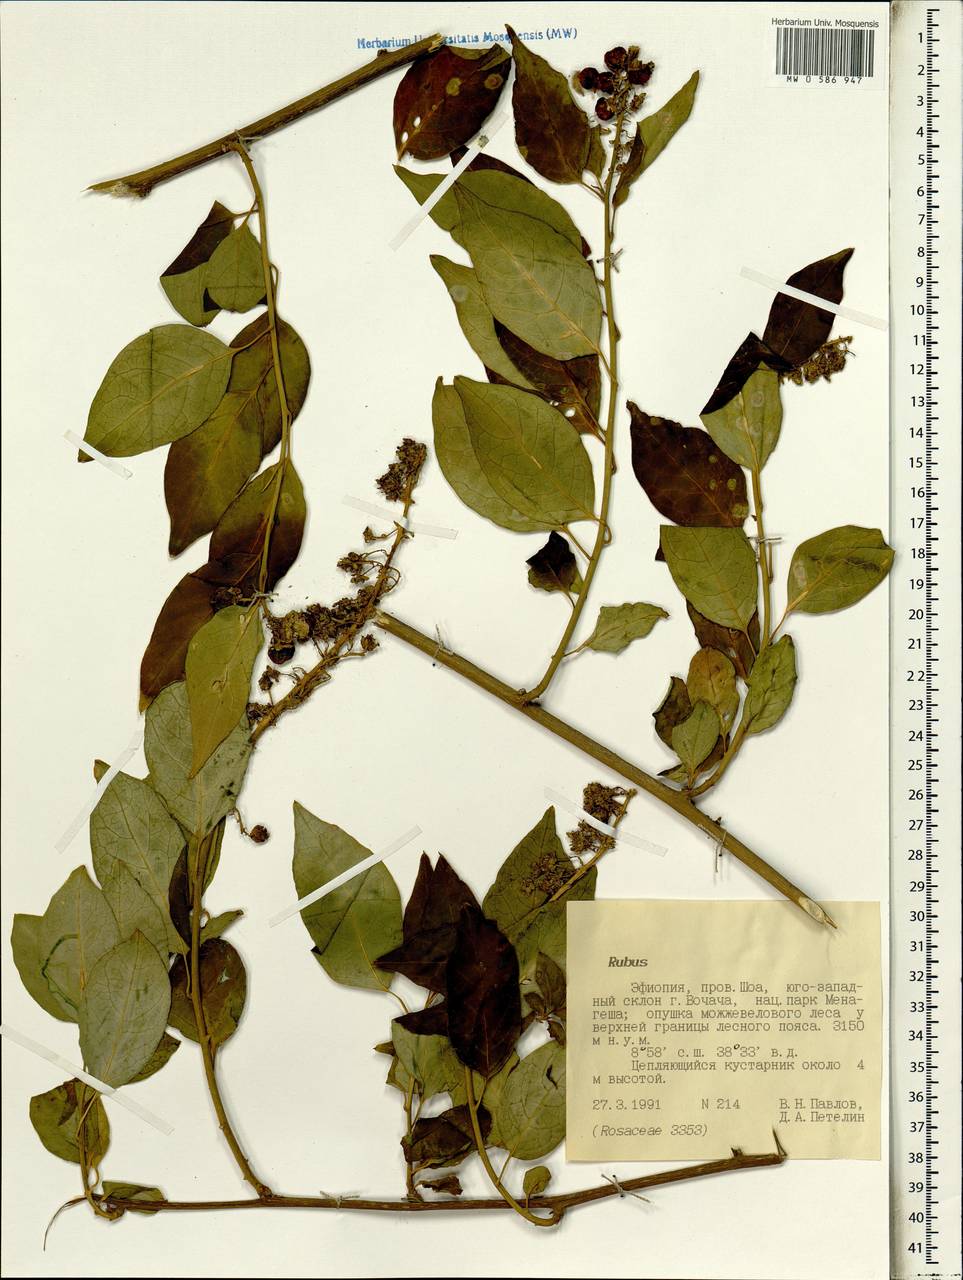 Rubus, Africa (AFR) (Ethiopia)